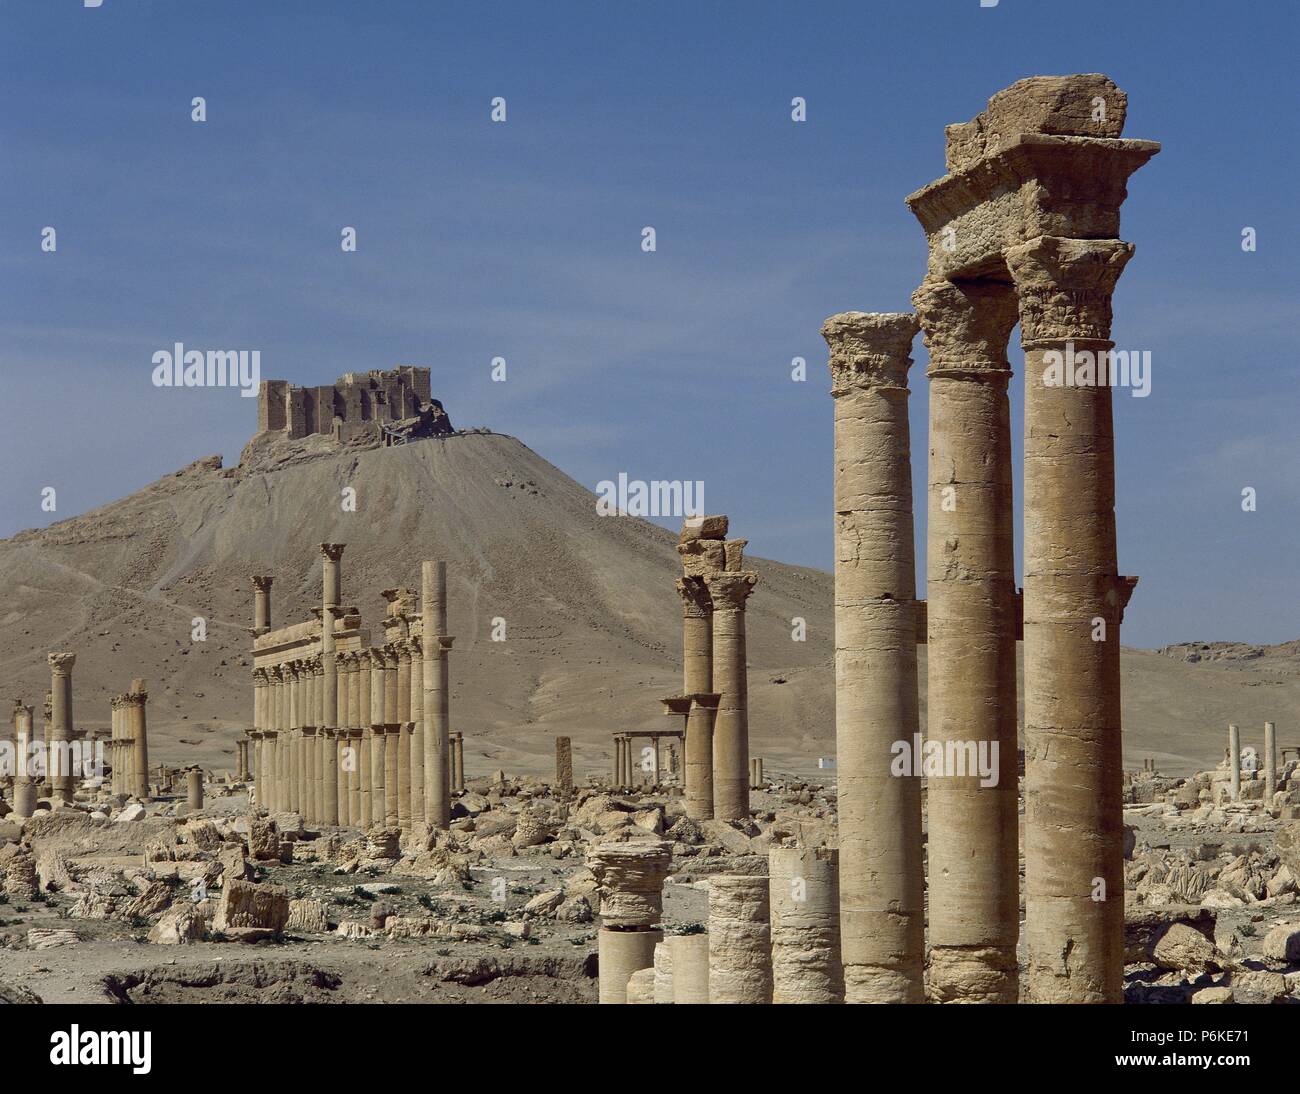 La Siria. Rovine di Palmyra. Medio Oriente. Un grande porticato. Iii secolo D.C. A sfondo, la fortezza di Qalat. Oasis Tadmor. Foto Stock